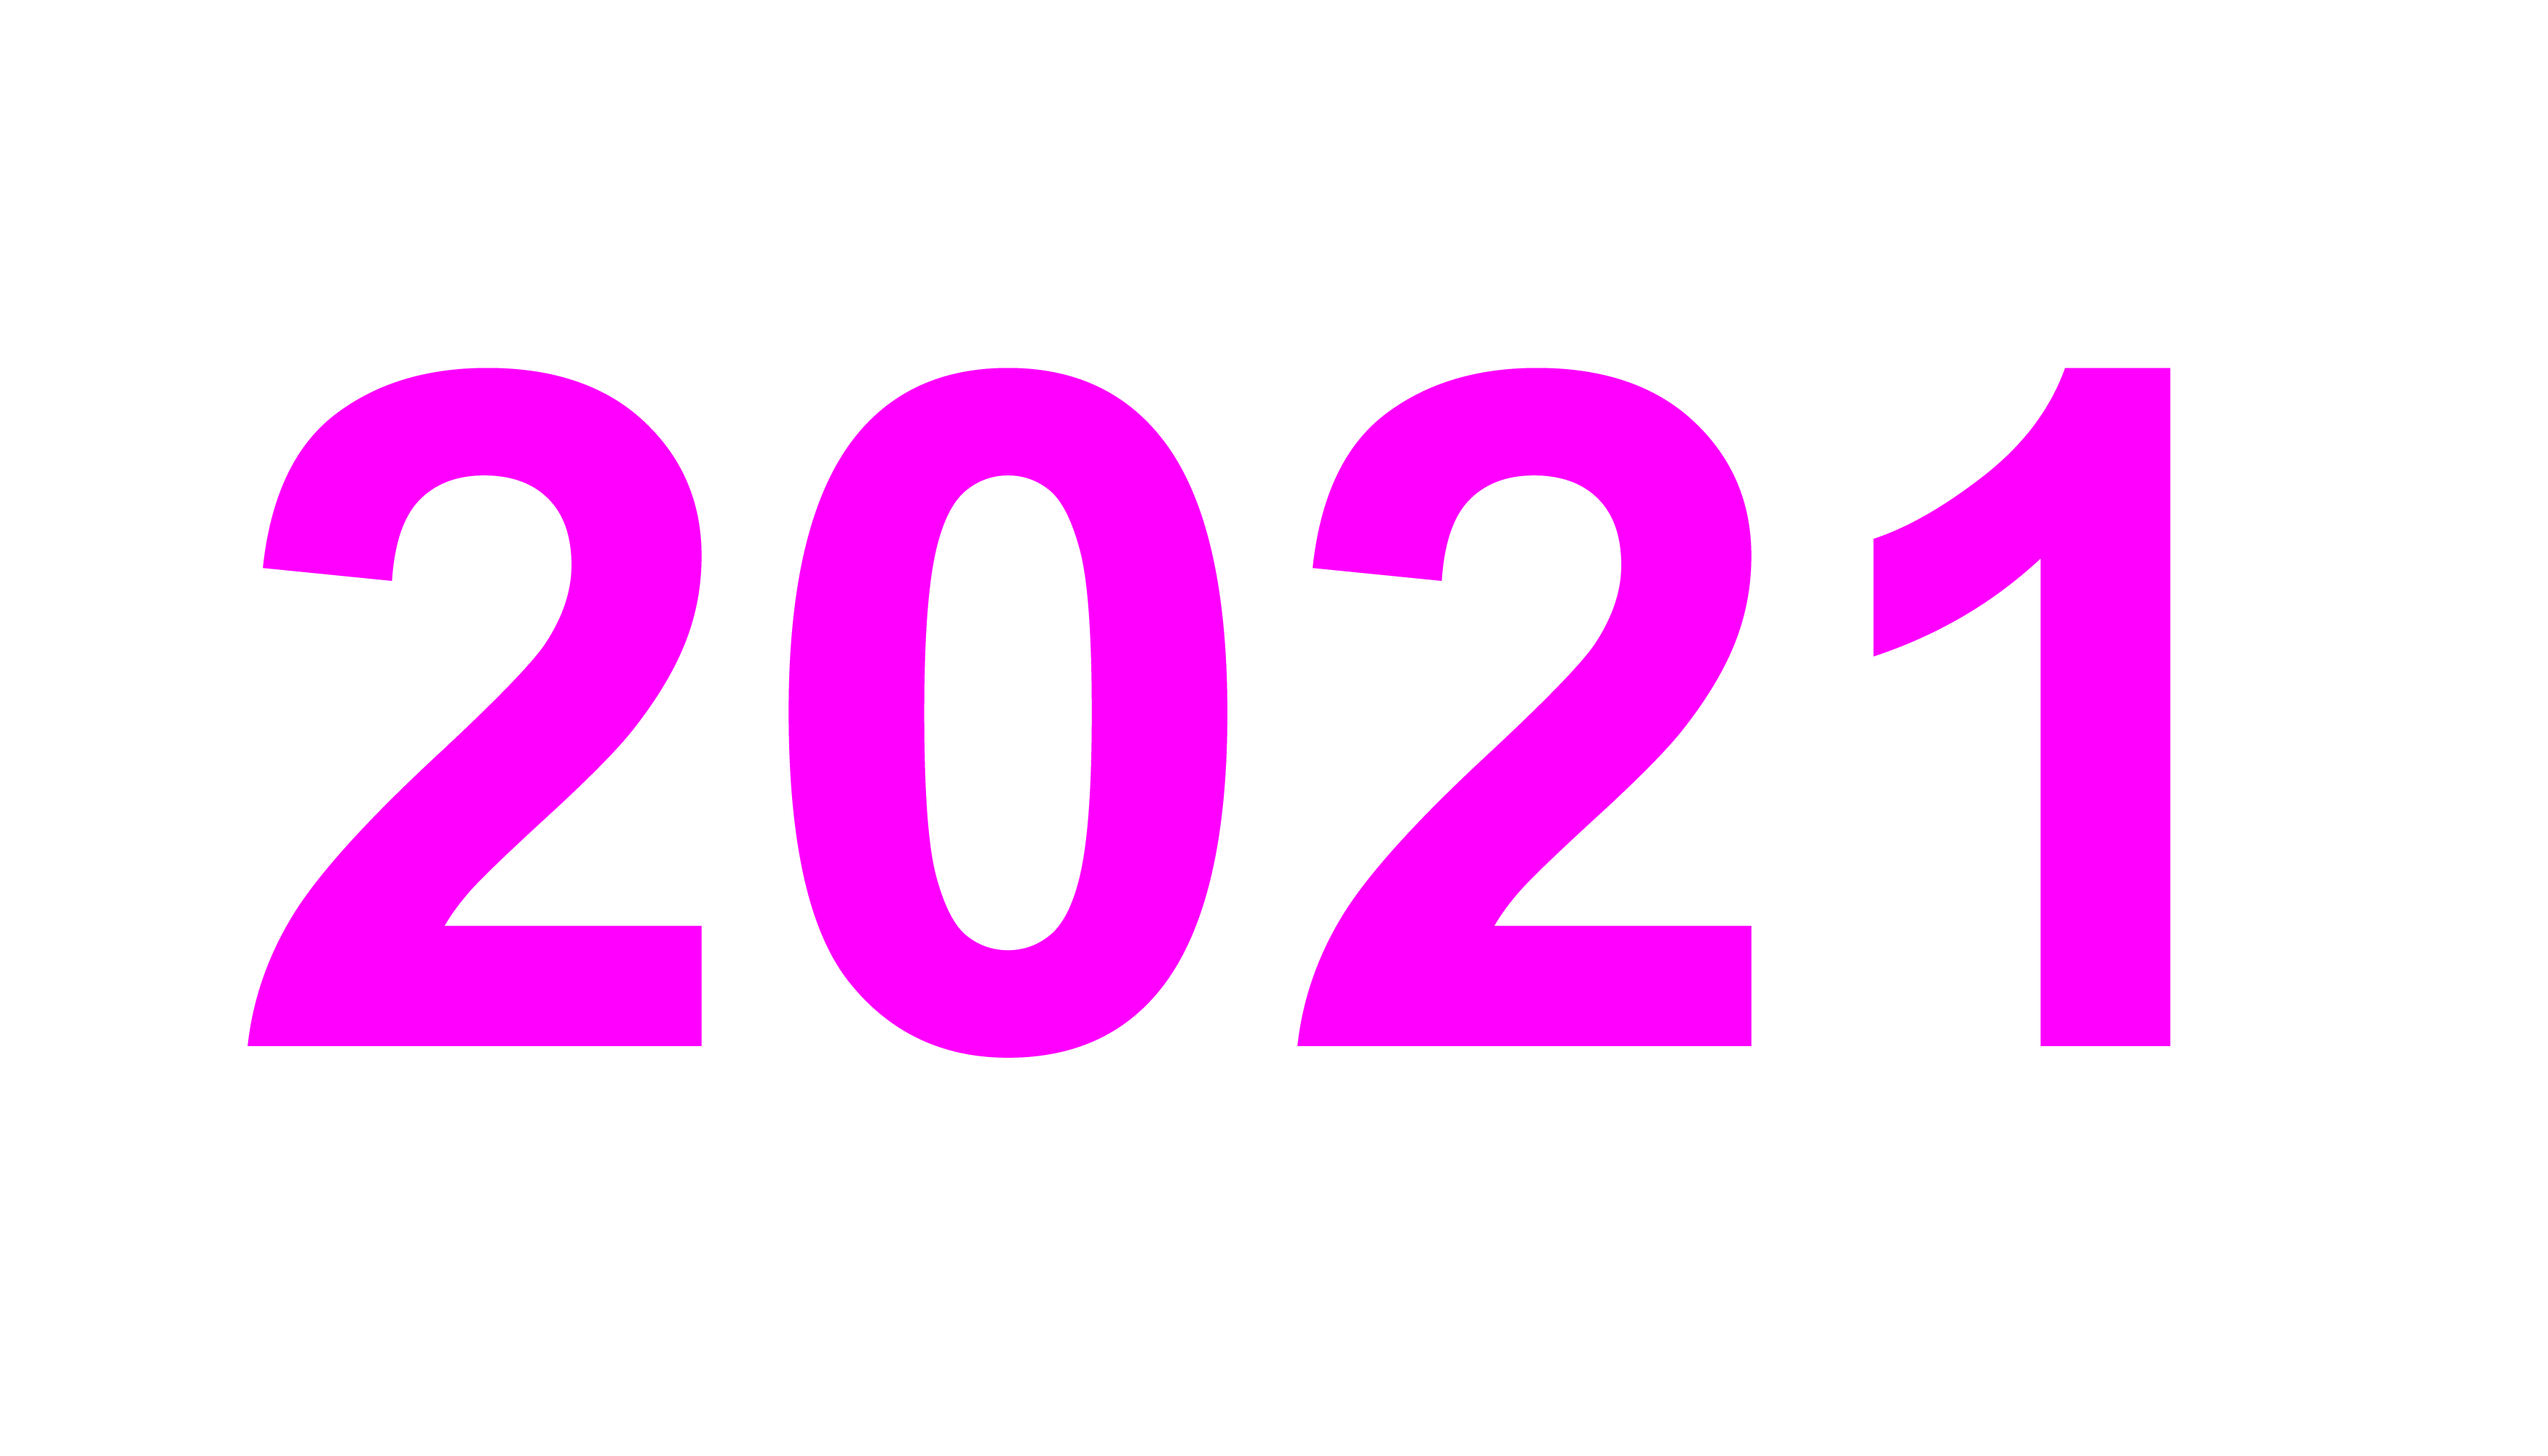 2021 Цифры. 2021 Год. Цифры 2021 год на прозрачном фоне. 2022 Надпись. Логотип 2024 на прозрачном фоне